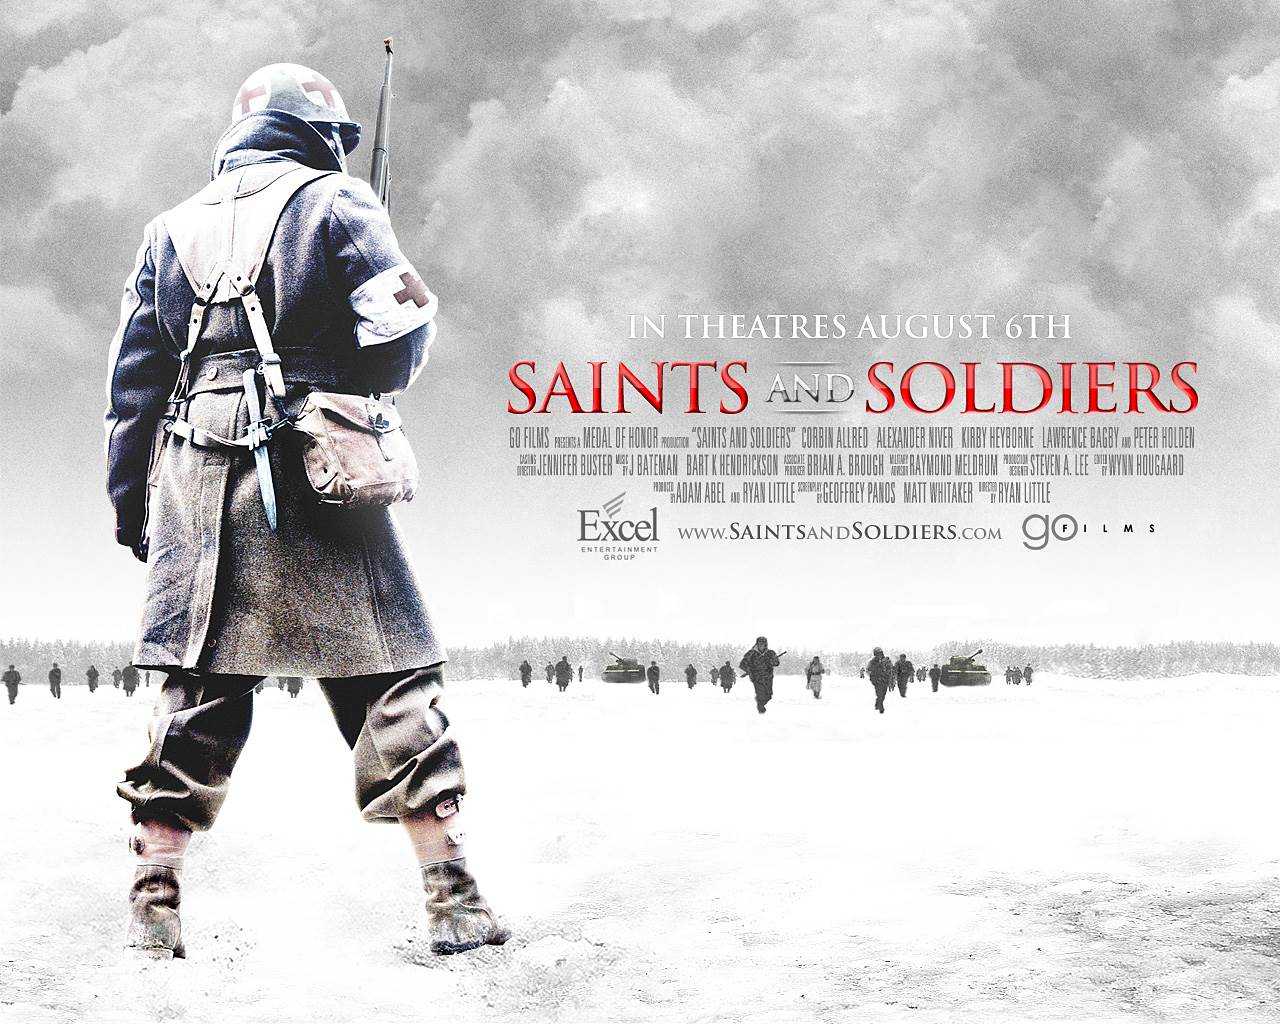 冰雪勇士1-3部（国语版）又名圣战士 空降信条，带入感很强的军旅战争、感动人心的二战影片